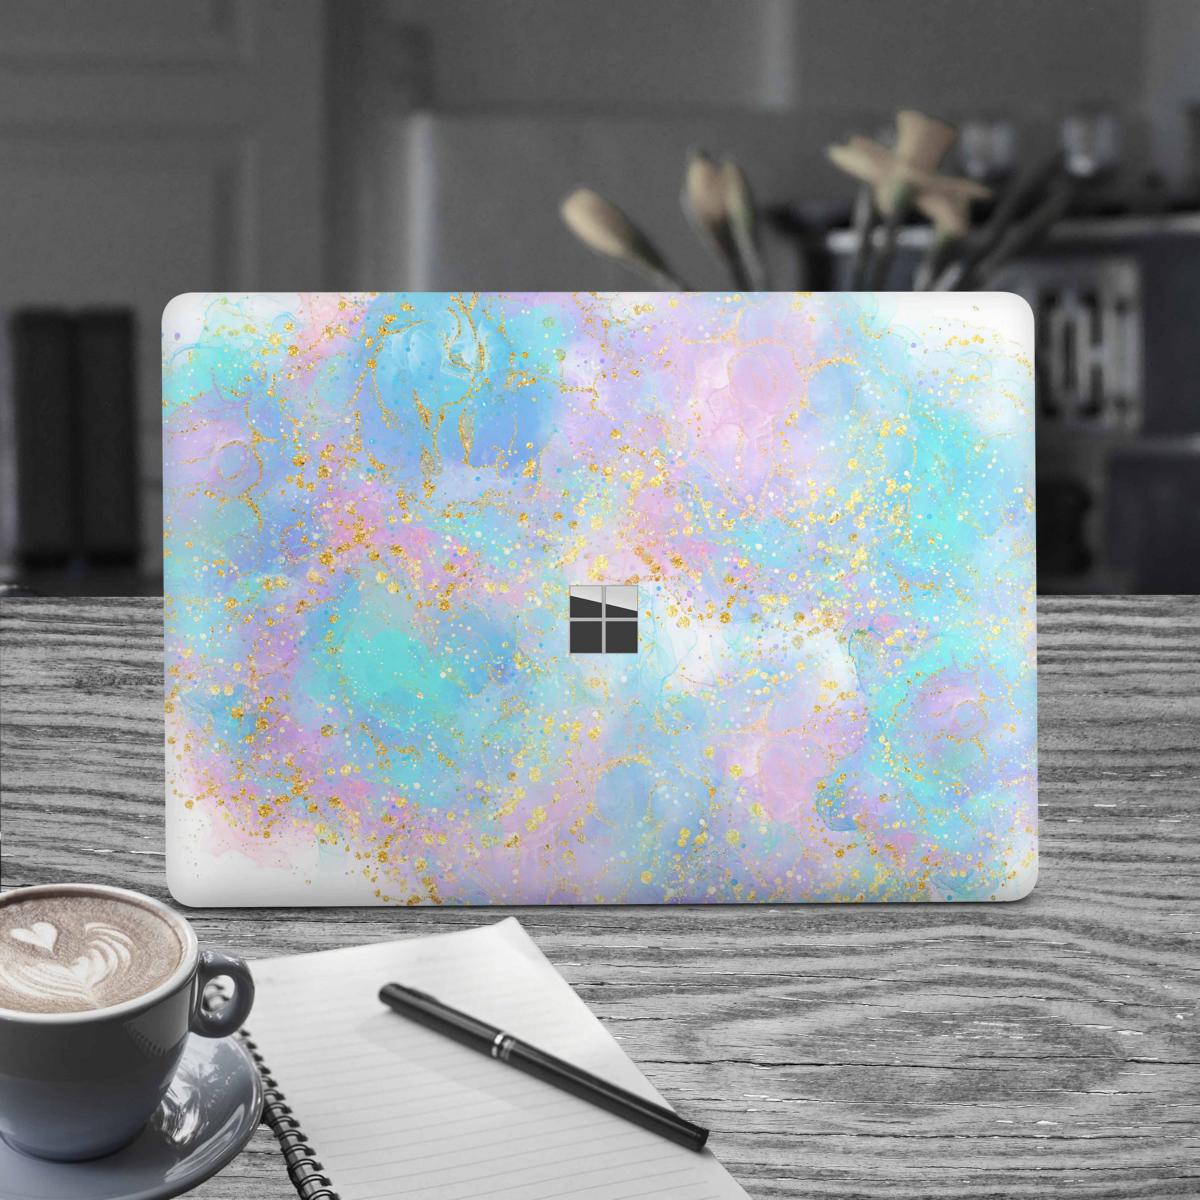 Microsoft Surface Book 2 Skin 15" Premium Vinylfolie Kratzerschutz Design Pink blue Glitter Elektronik-Sticker & -Aufkleber Skins4u   